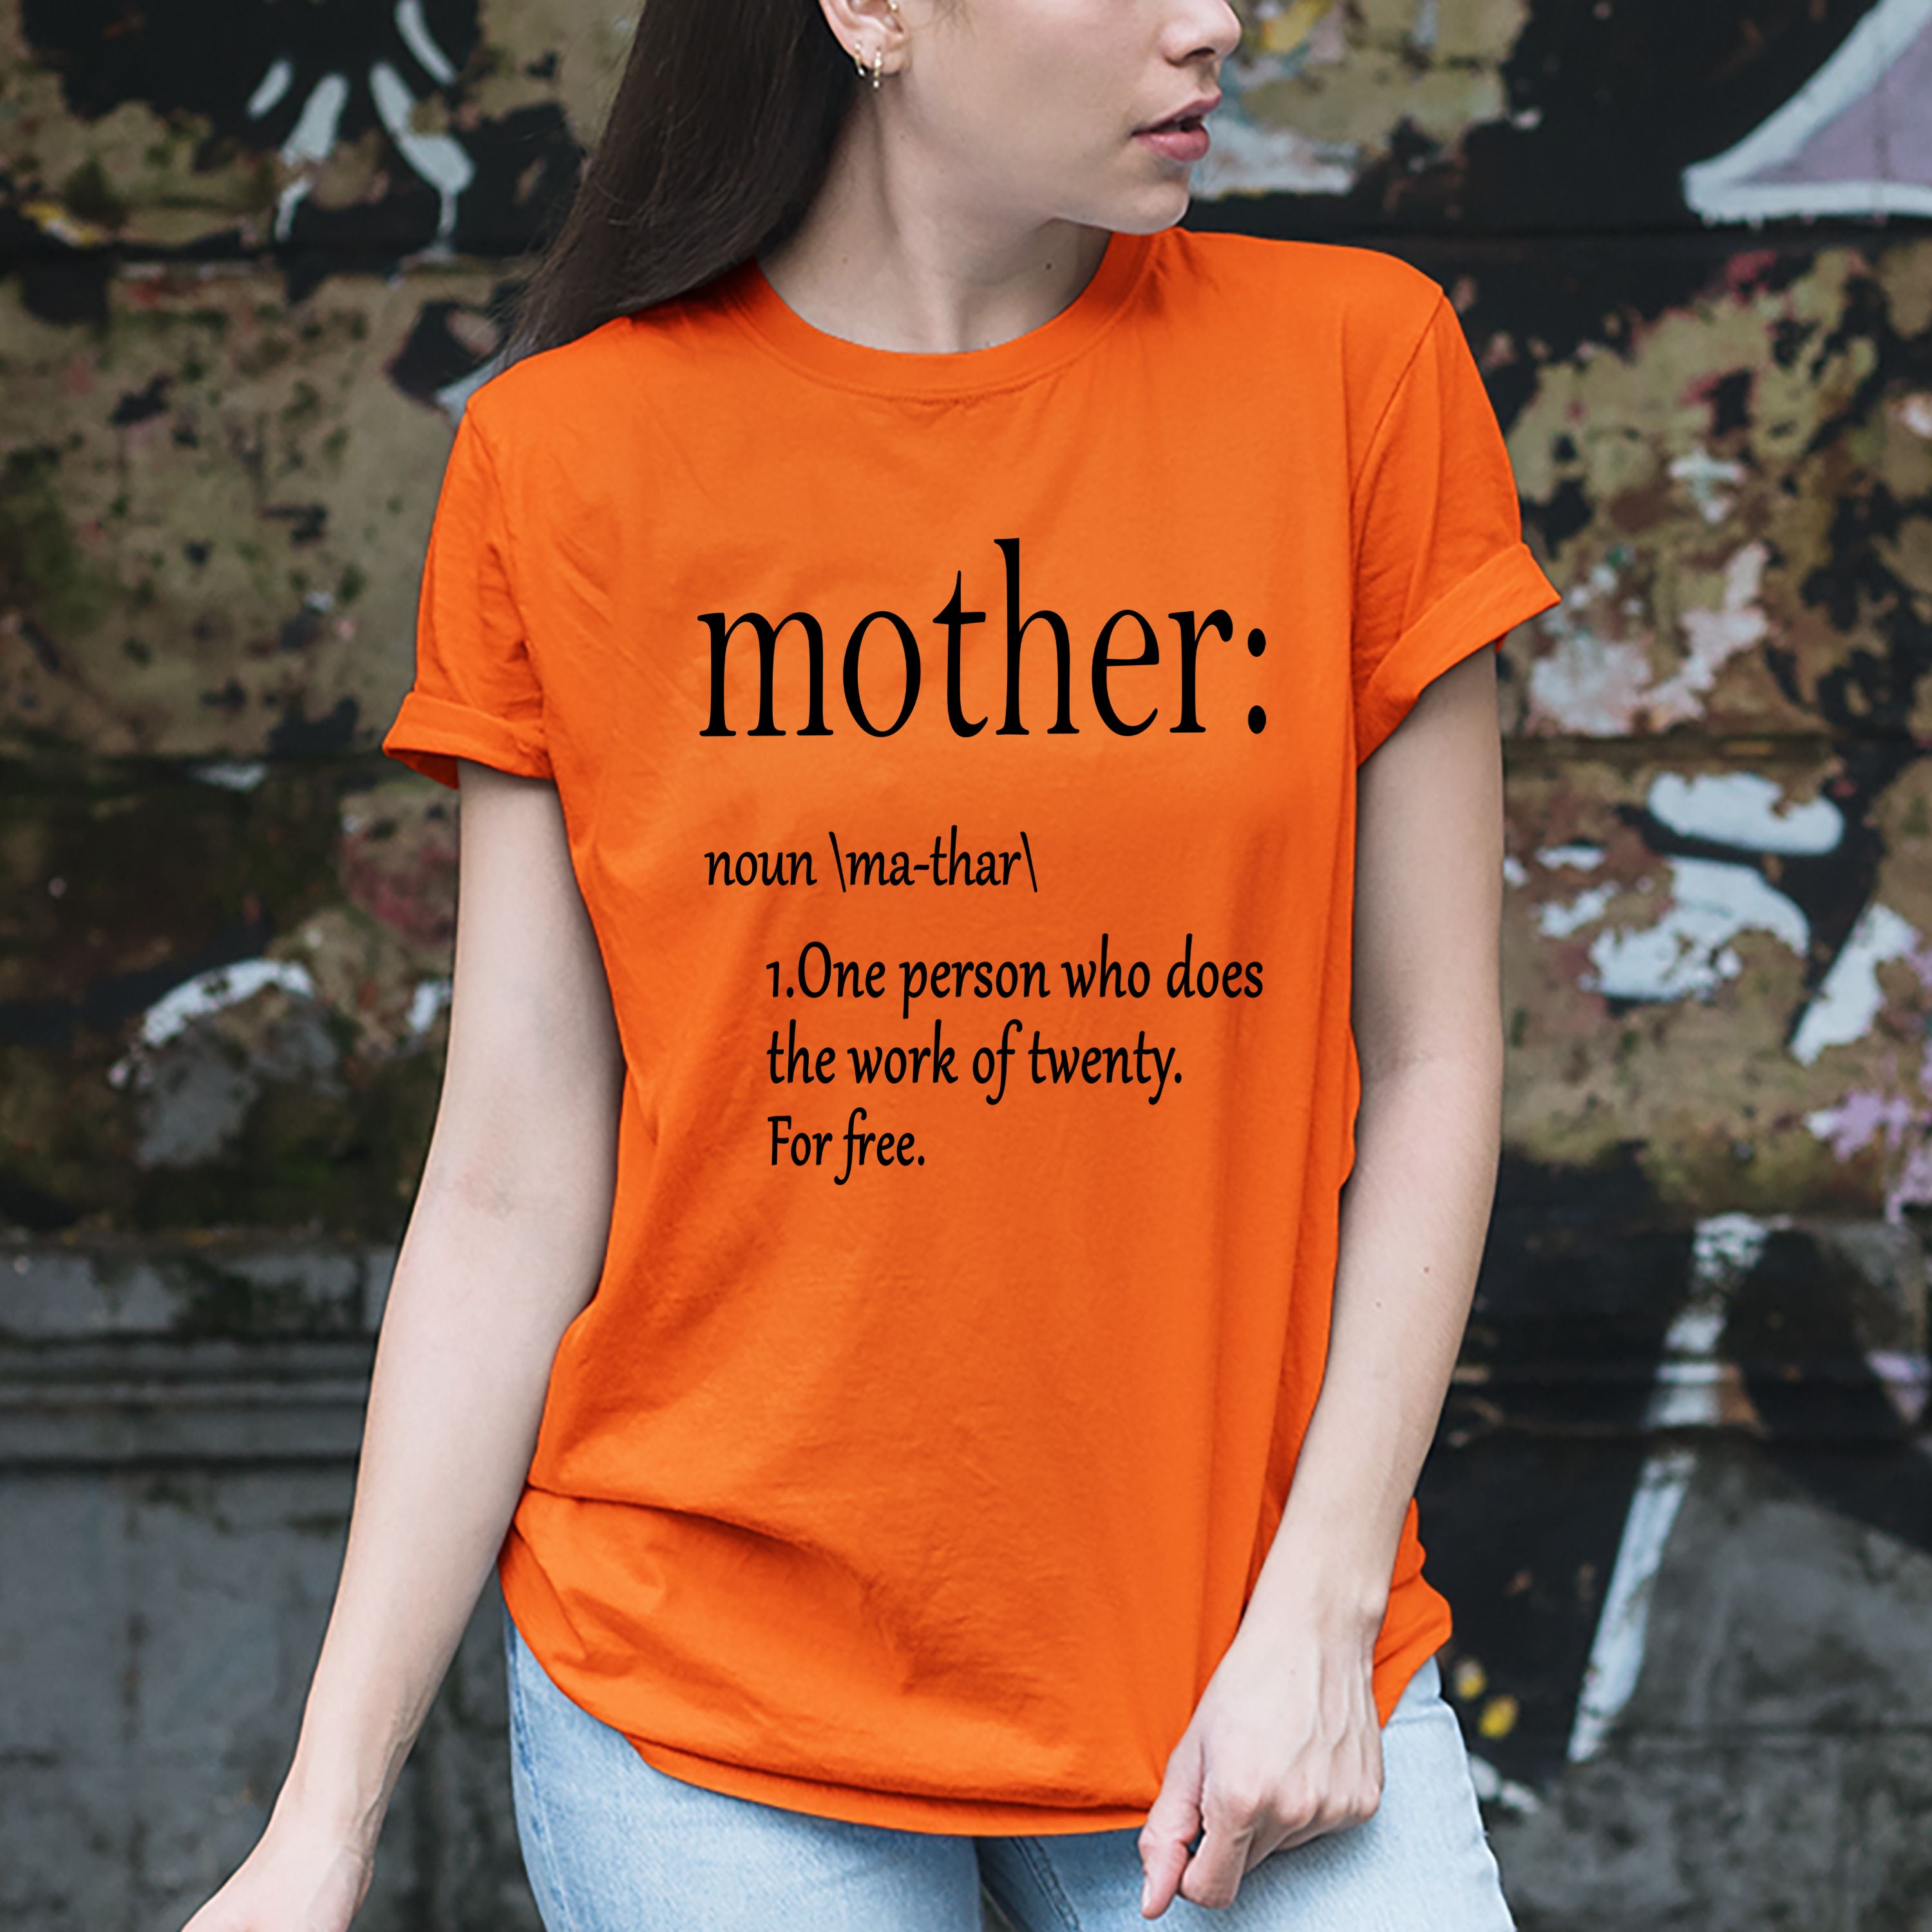 "Mother: noun \ma-thar \".